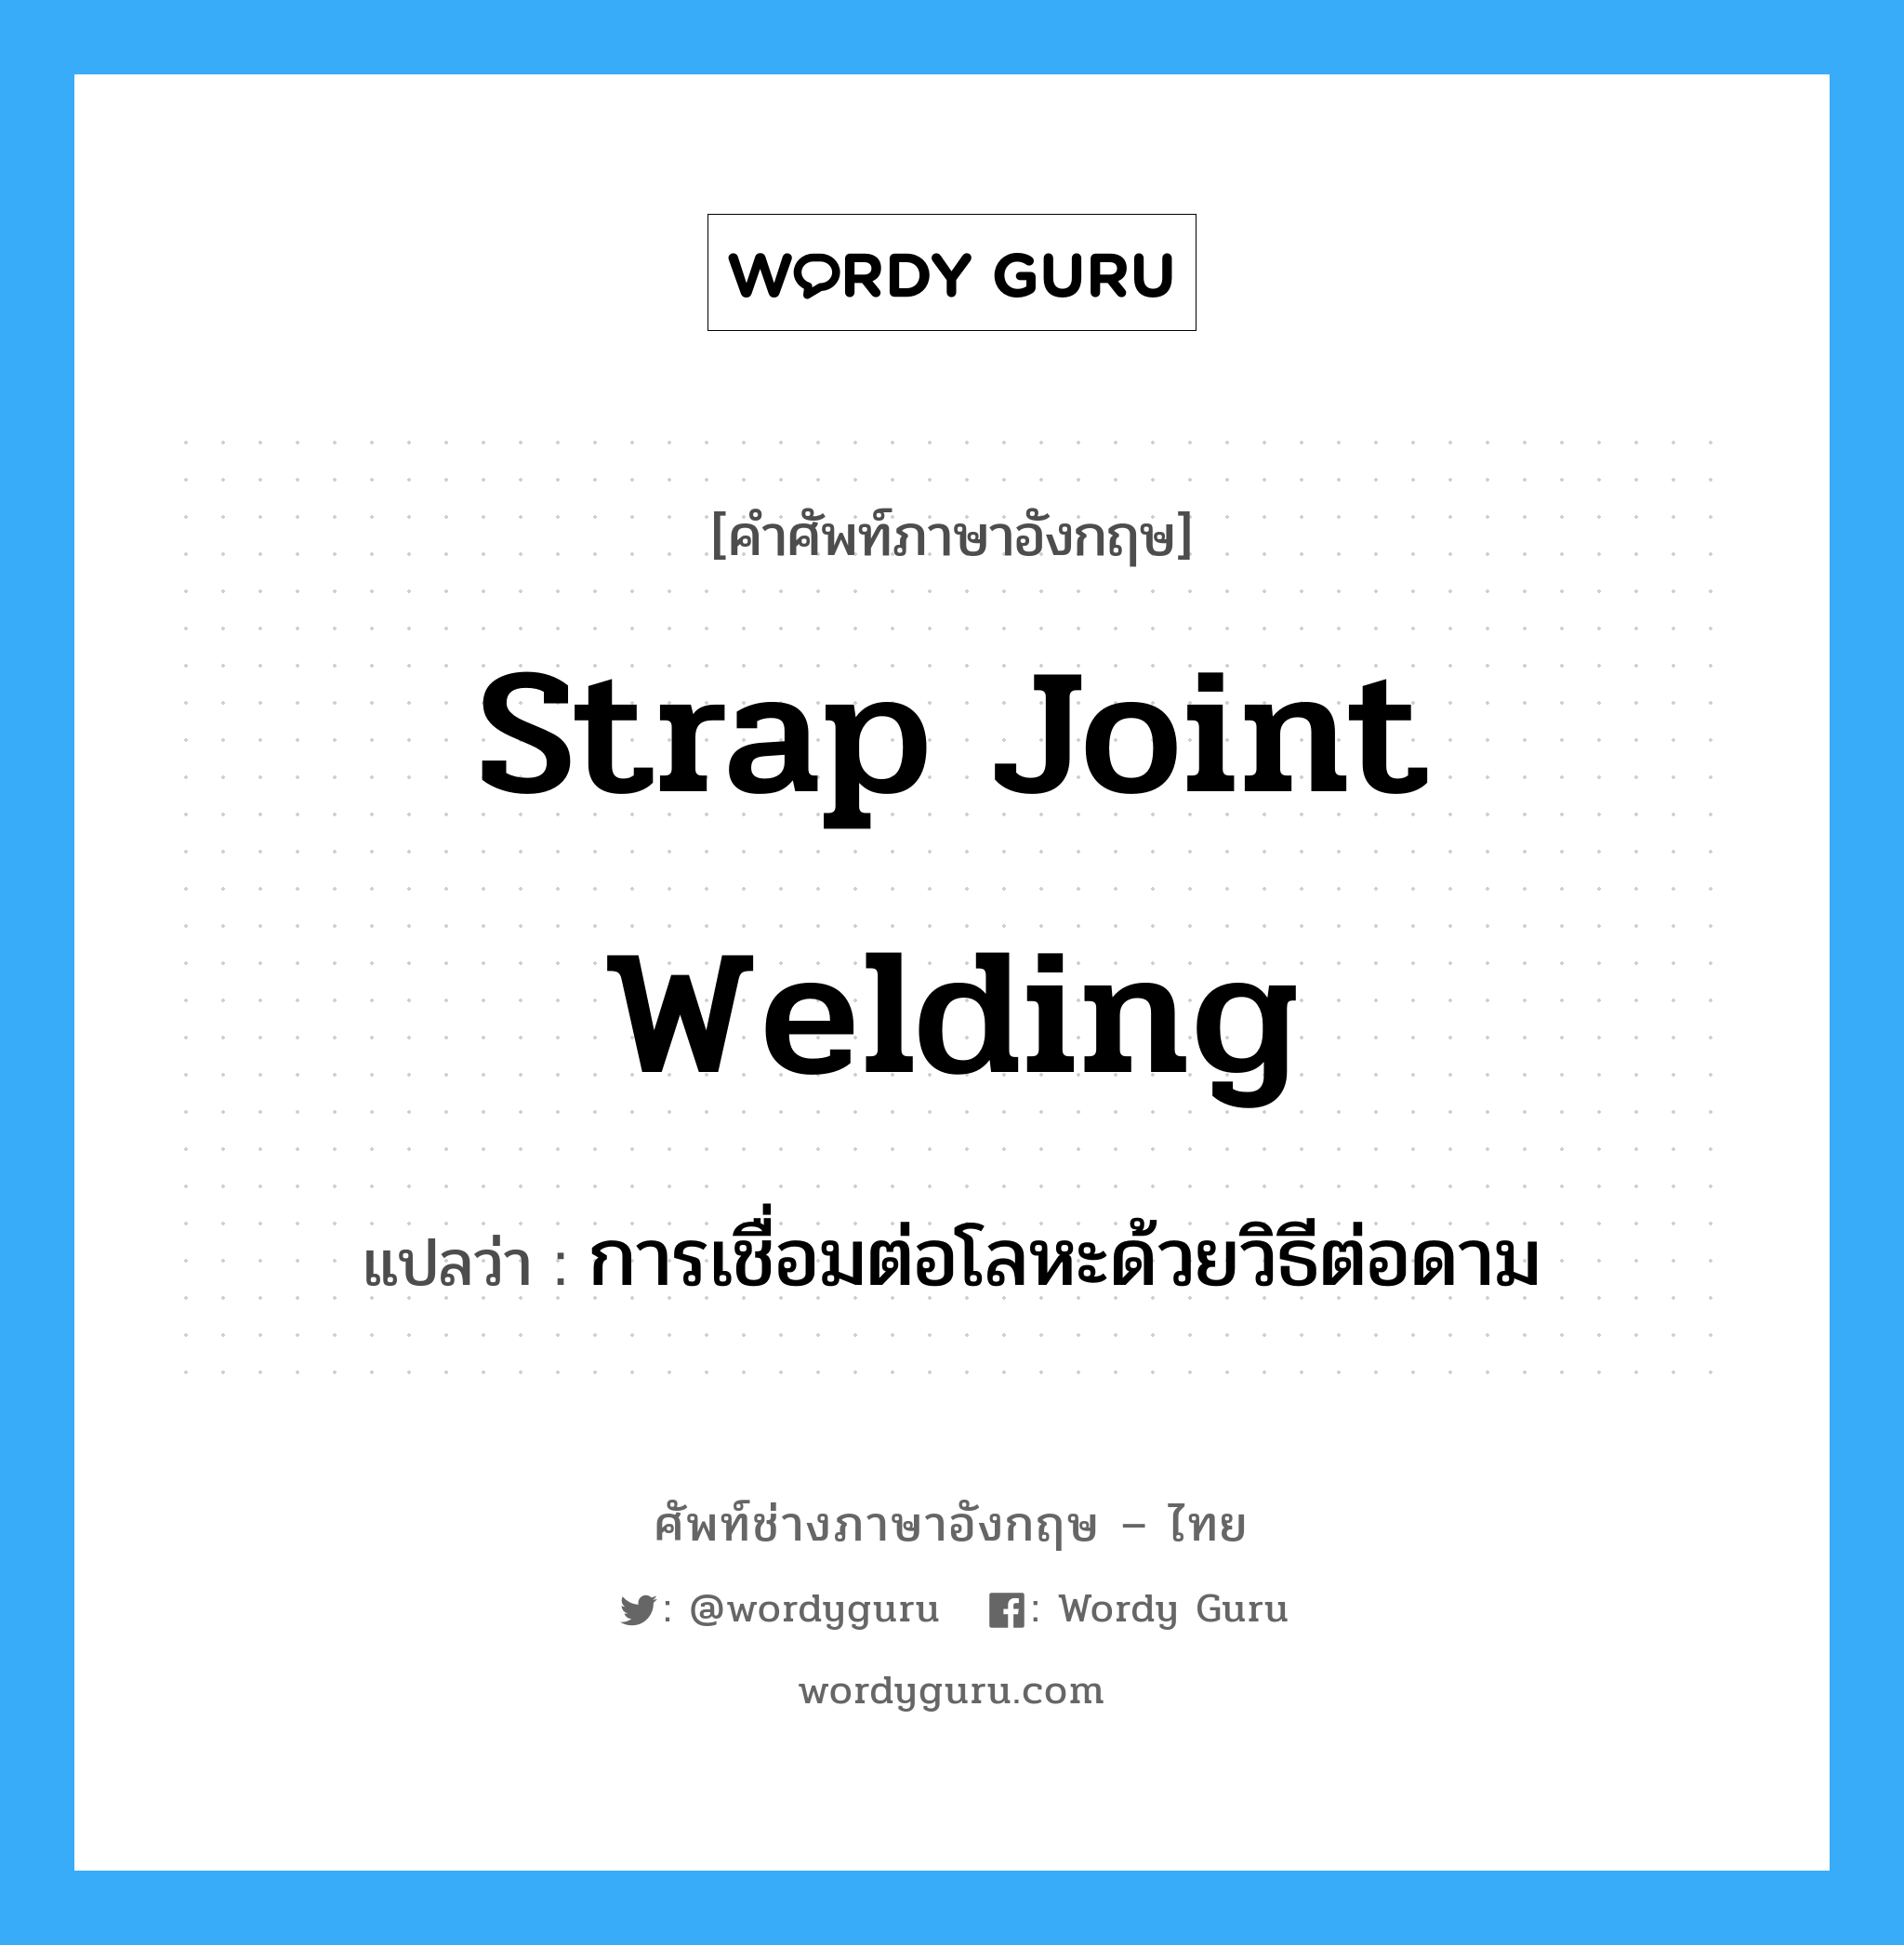 การเชื่อมต่อโลหะด้วยวิธีต่อดาม ภาษาอังกฤษ?, คำศัพท์ช่างภาษาอังกฤษ - ไทย การเชื่อมต่อโลหะด้วยวิธีต่อดาม คำศัพท์ภาษาอังกฤษ การเชื่อมต่อโลหะด้วยวิธีต่อดาม แปลว่า strap joint welding